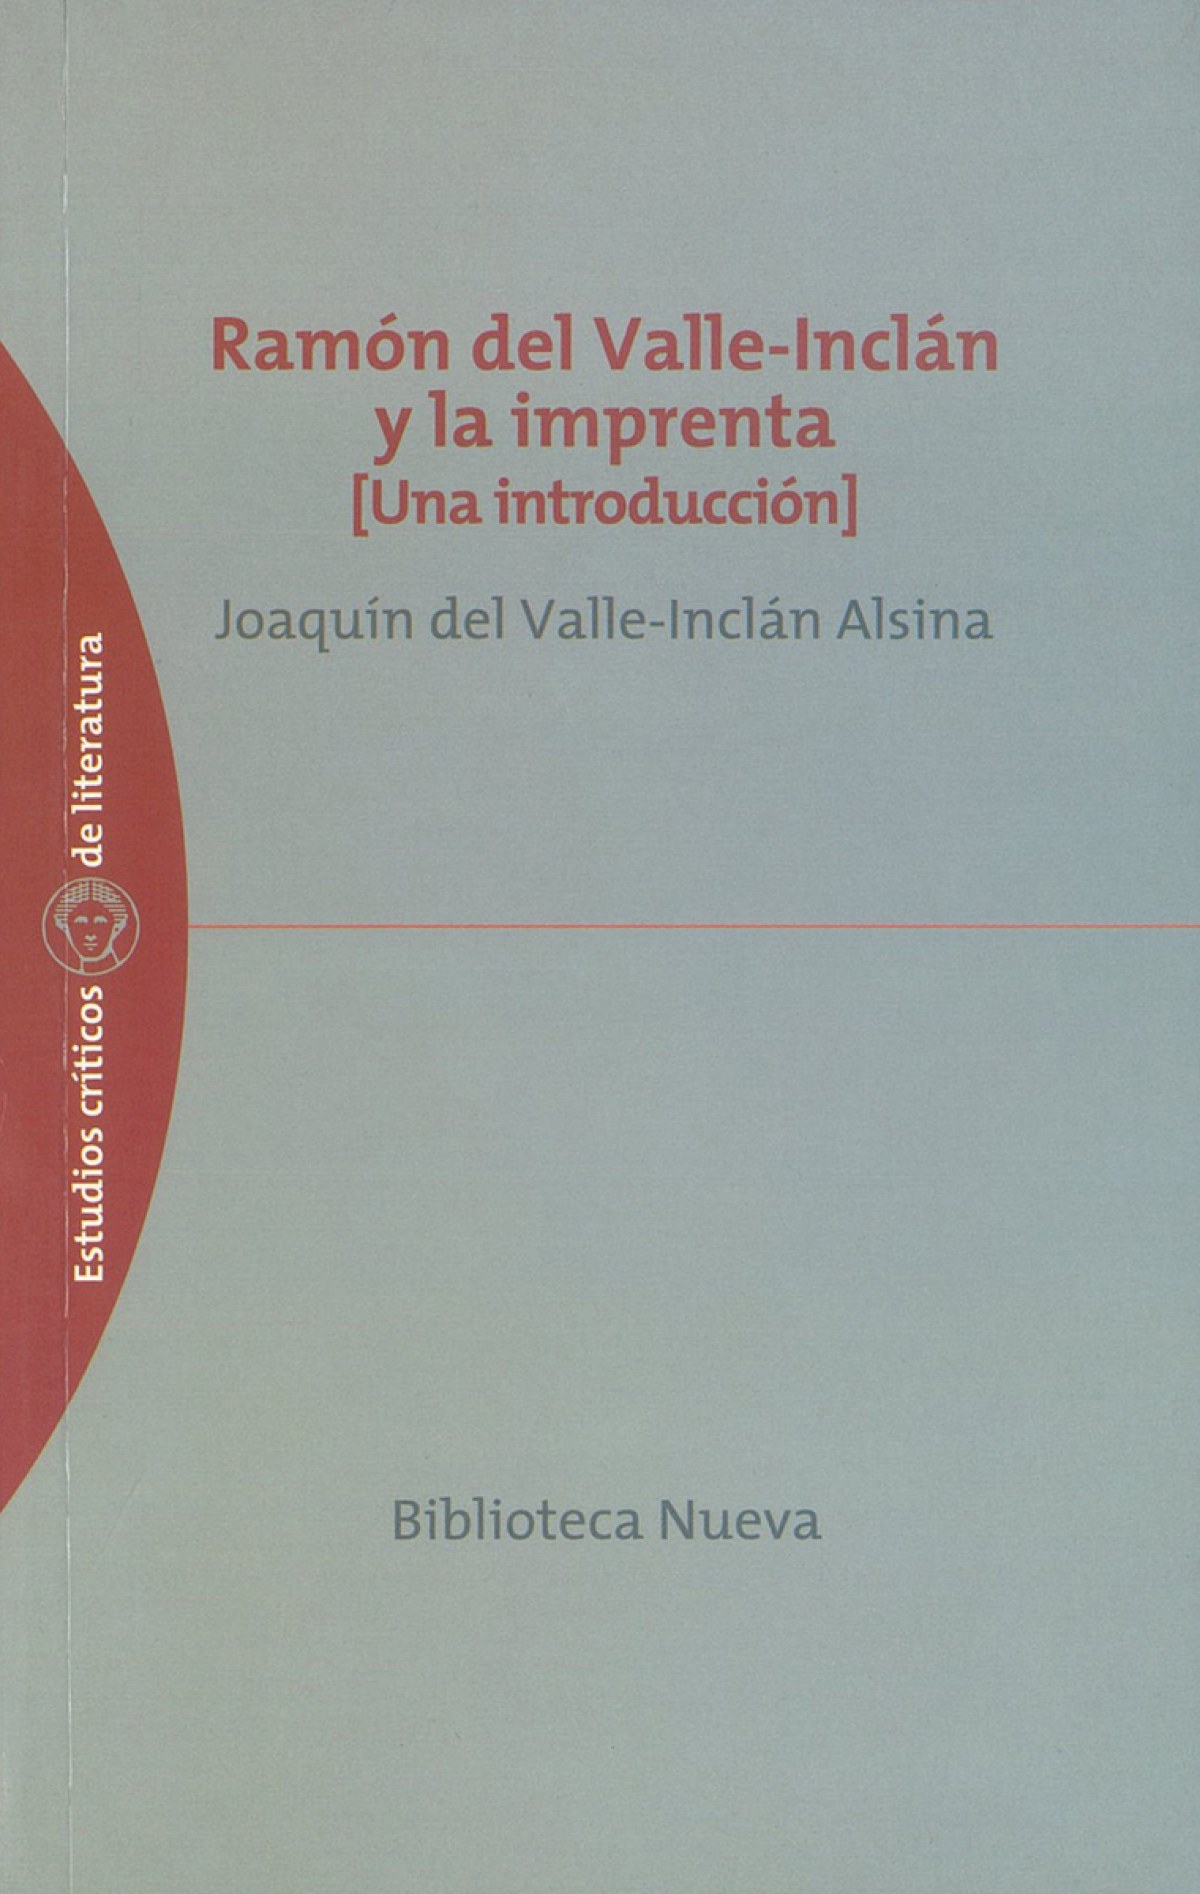 Ramon maria del valle-inclan y la imprenta - Valle-inclan Alsina, Joaquin